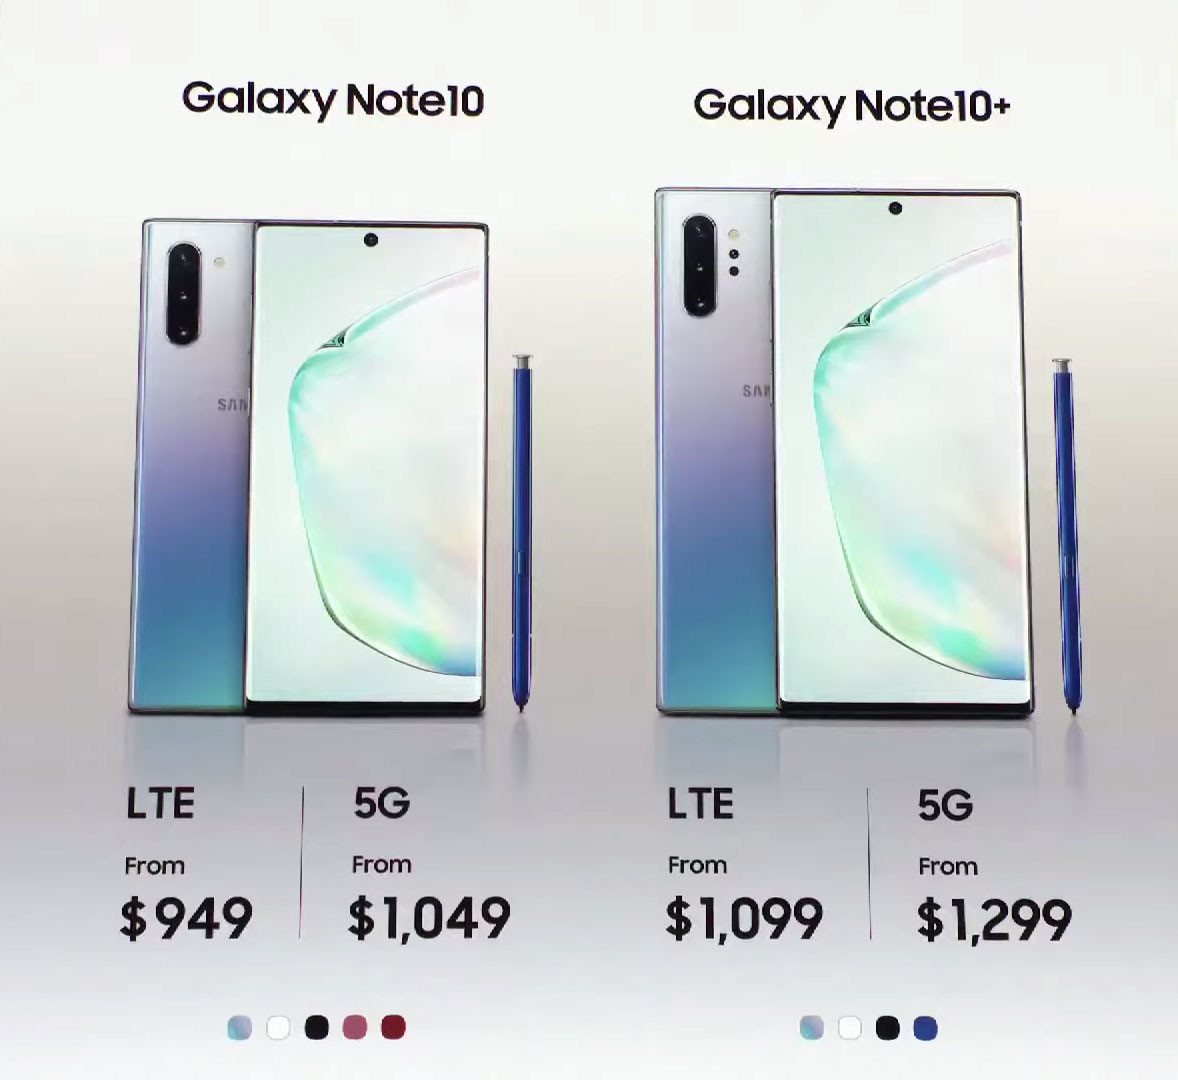 ราคา Samsung Galaxy Note10 และ Galaxy Note10+